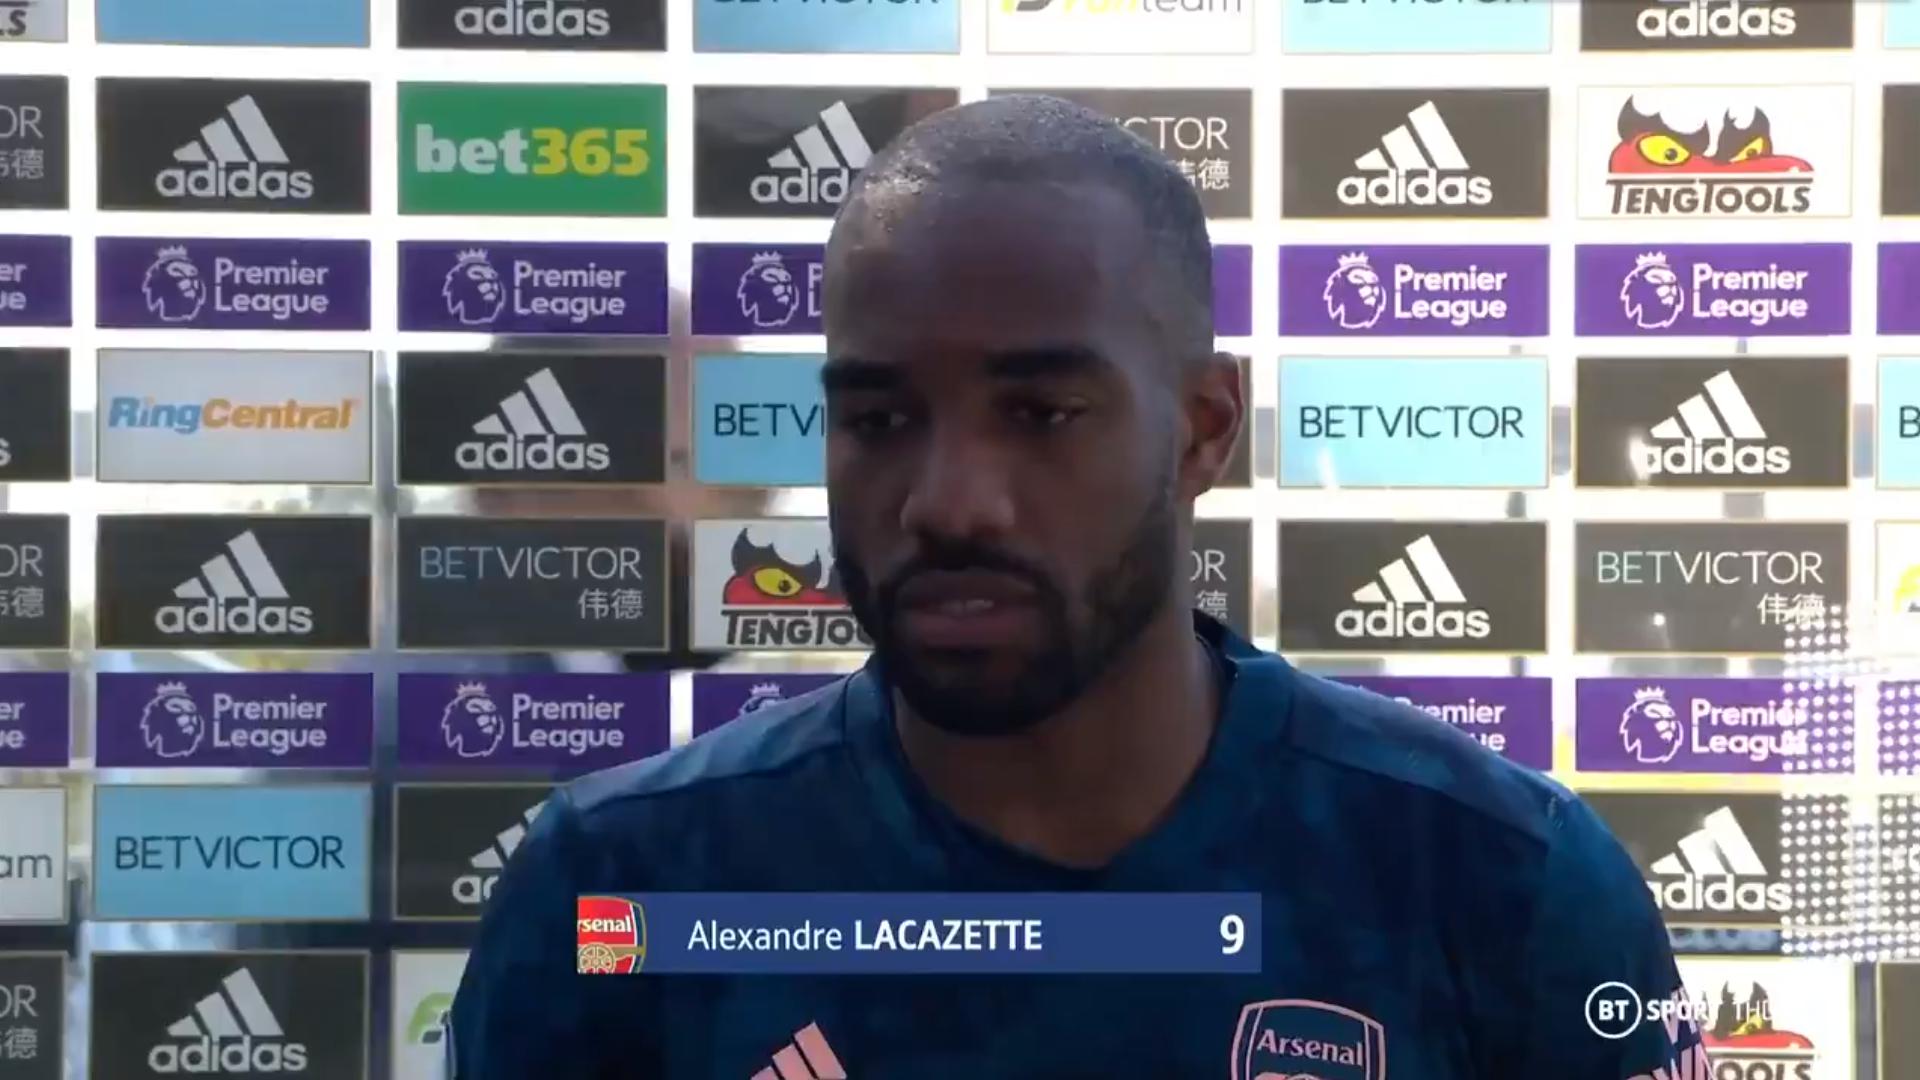 拉卡泽特: 我在阿森纳很开心, 希望能继续帮助球队不断提高